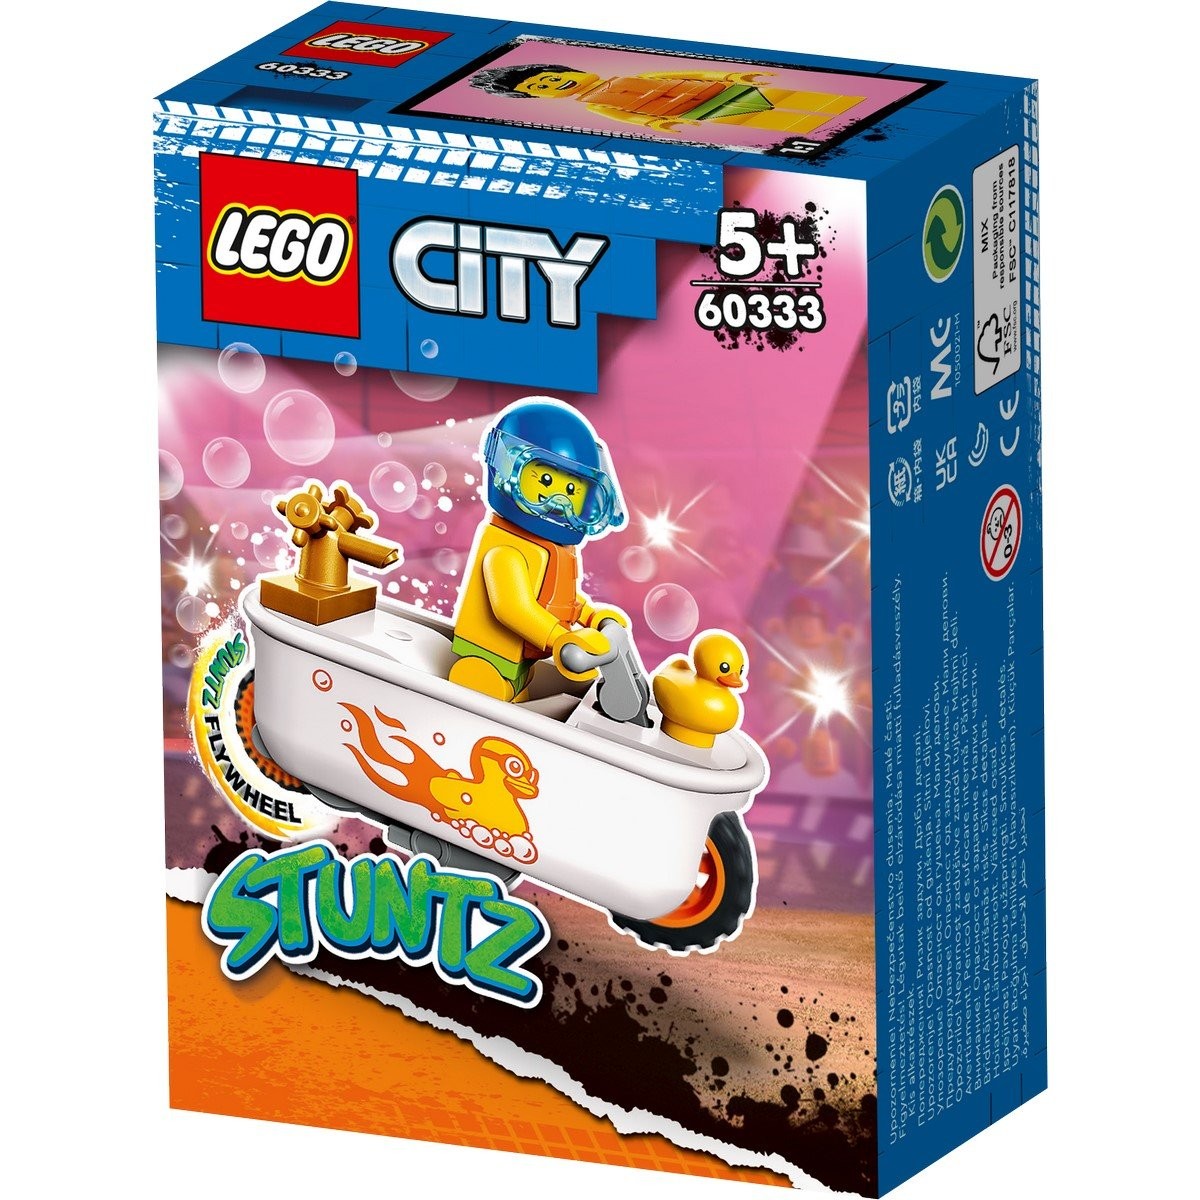 Gros rat - Pièce LEGO® 38635 - Super Briques